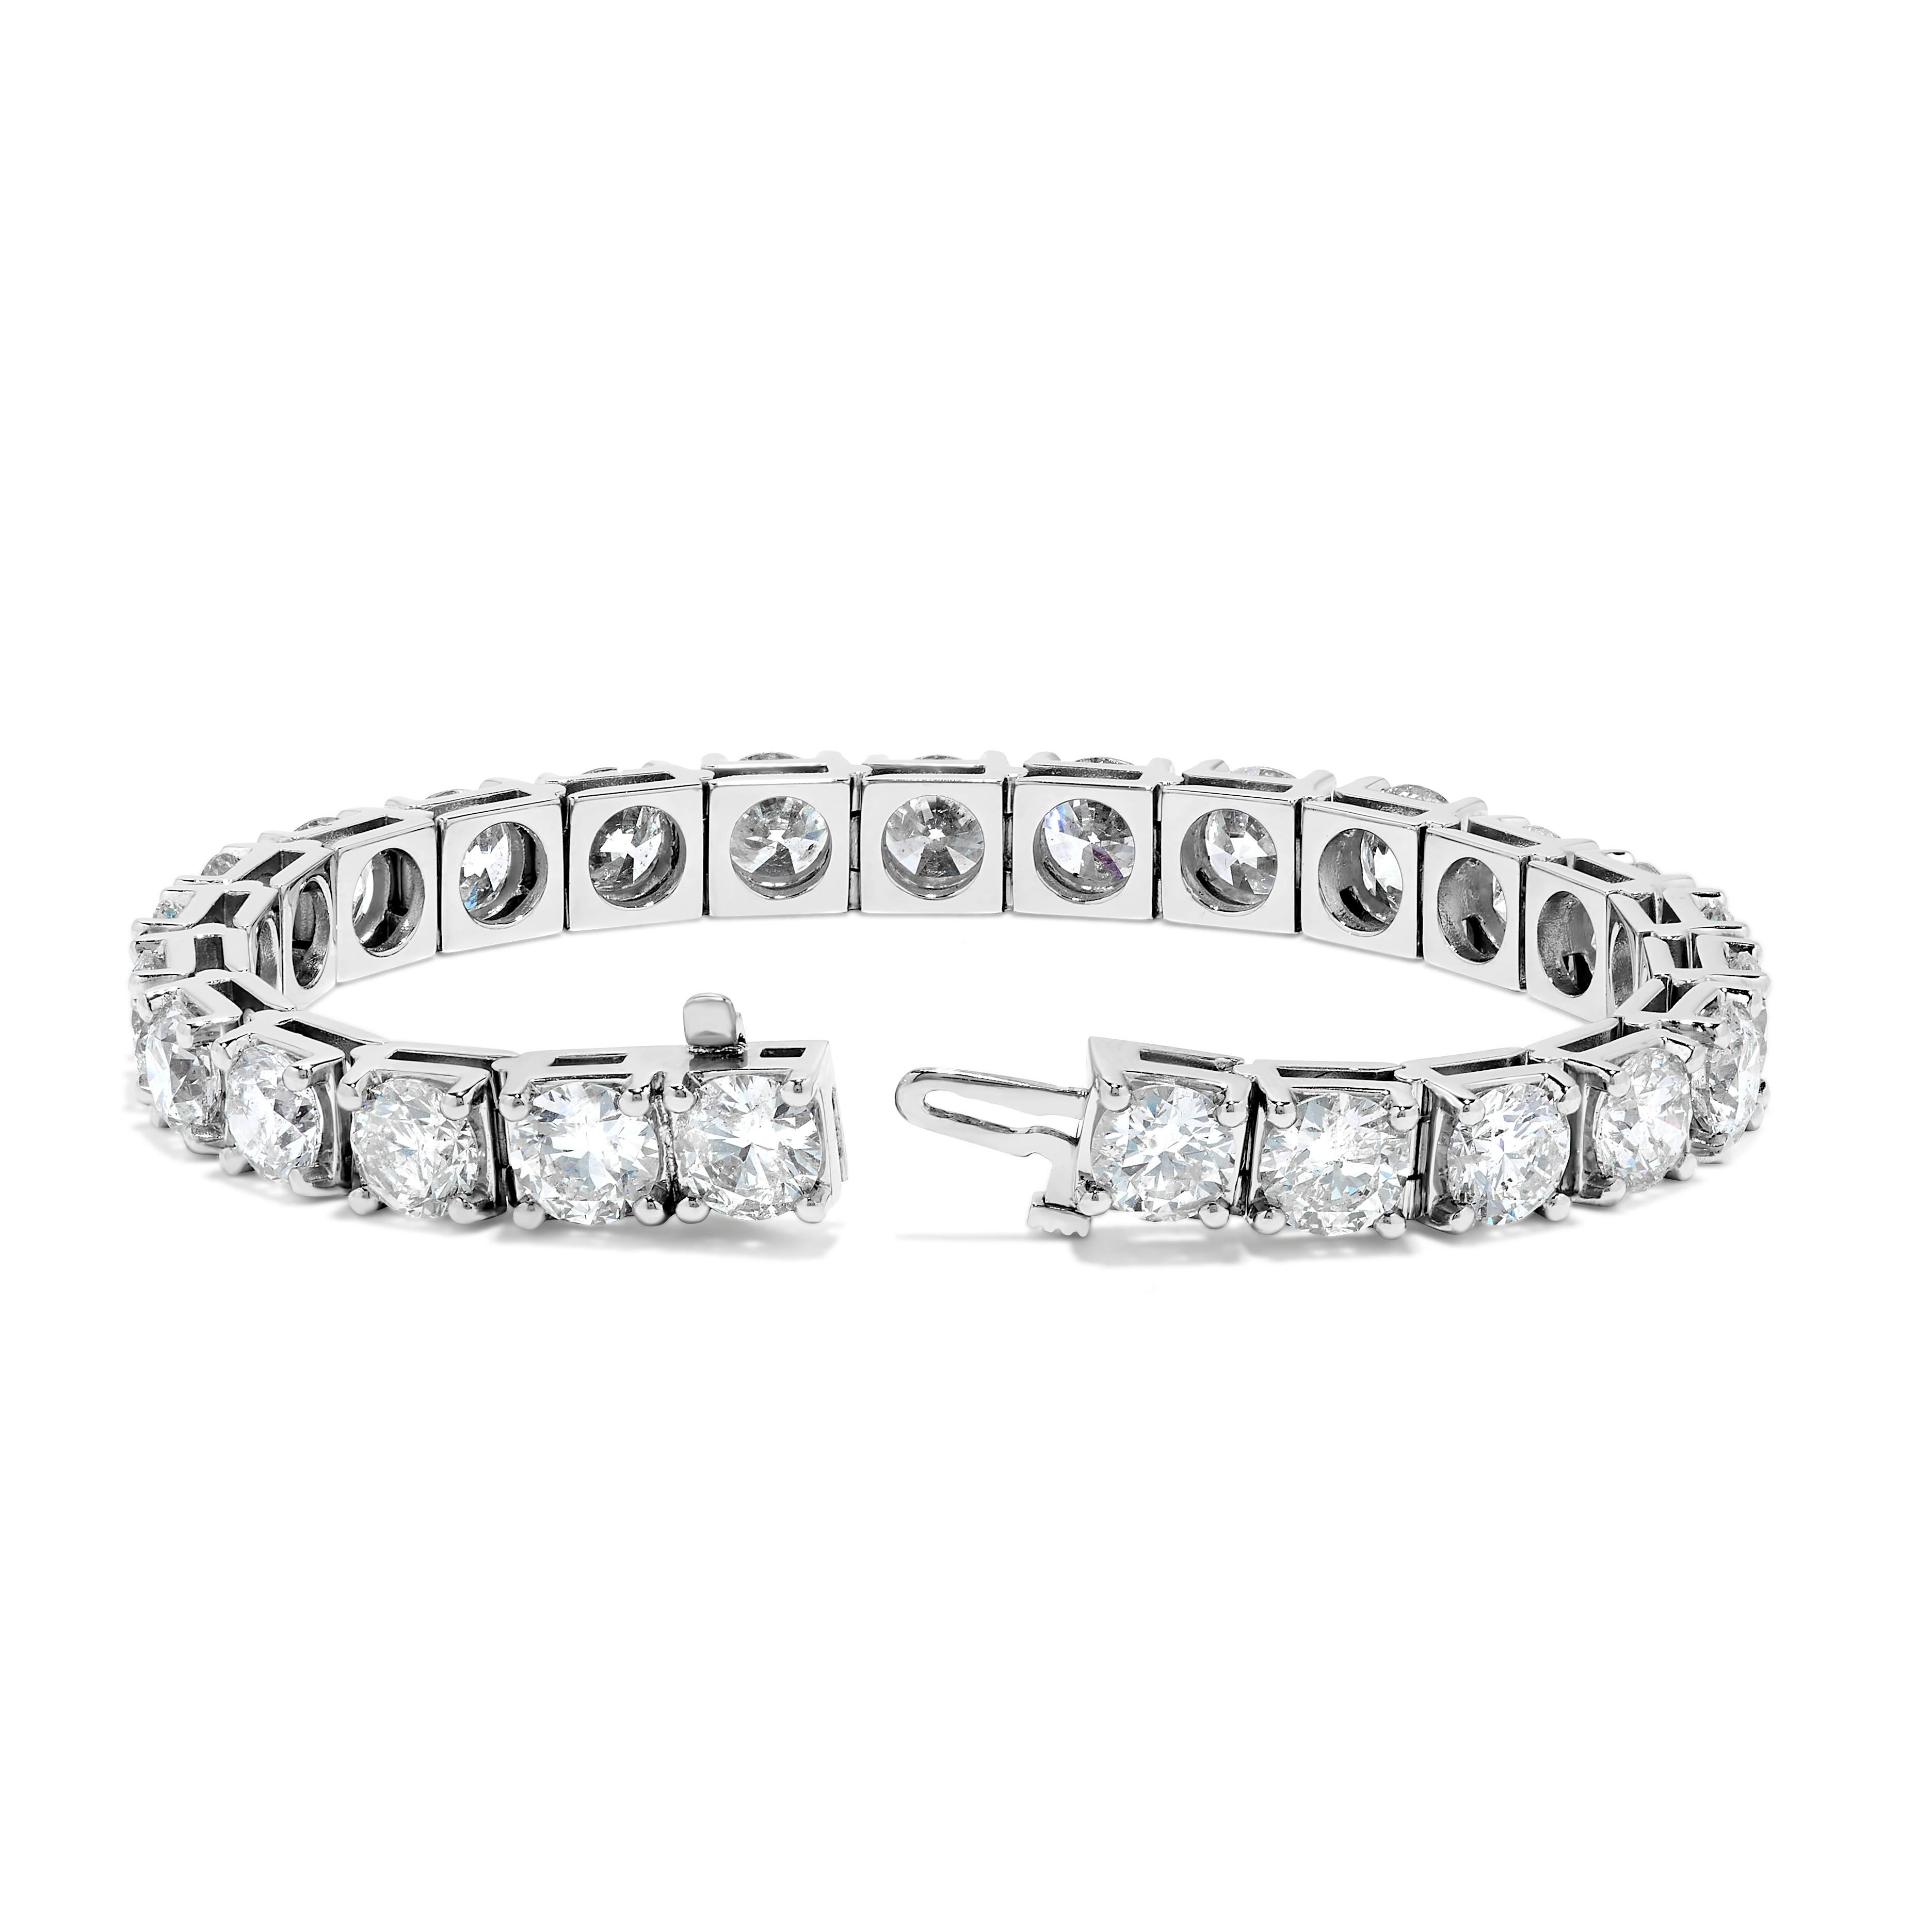 1 carat diamond tennis bracelet price